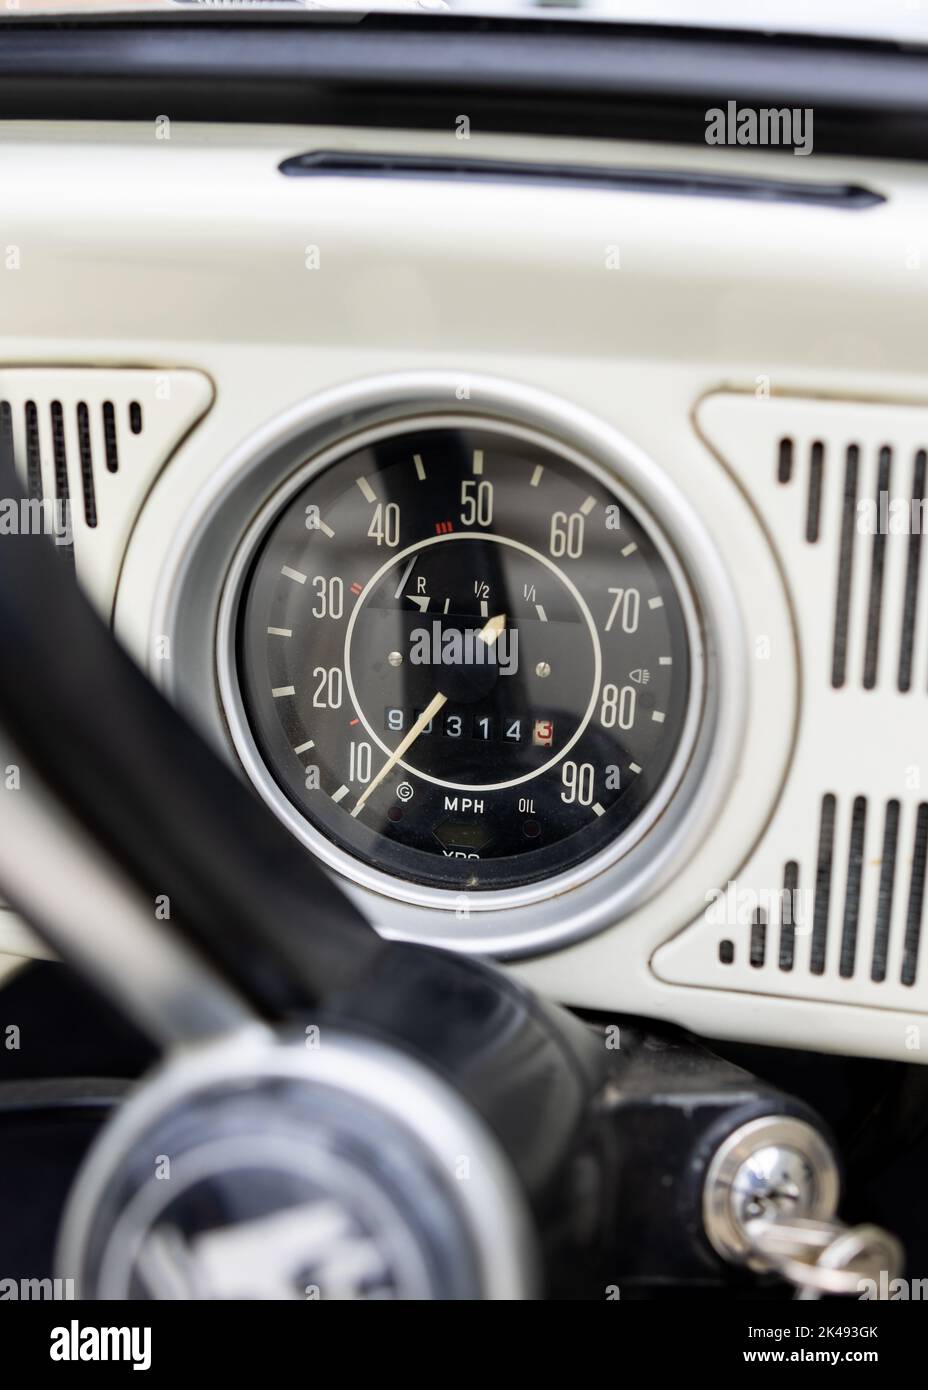 Auto d'epoca classica bianca retrò primo piano del tachimetro con un'elevata milage cronometrata con chiave inserita nell'accensione. Foto Stock